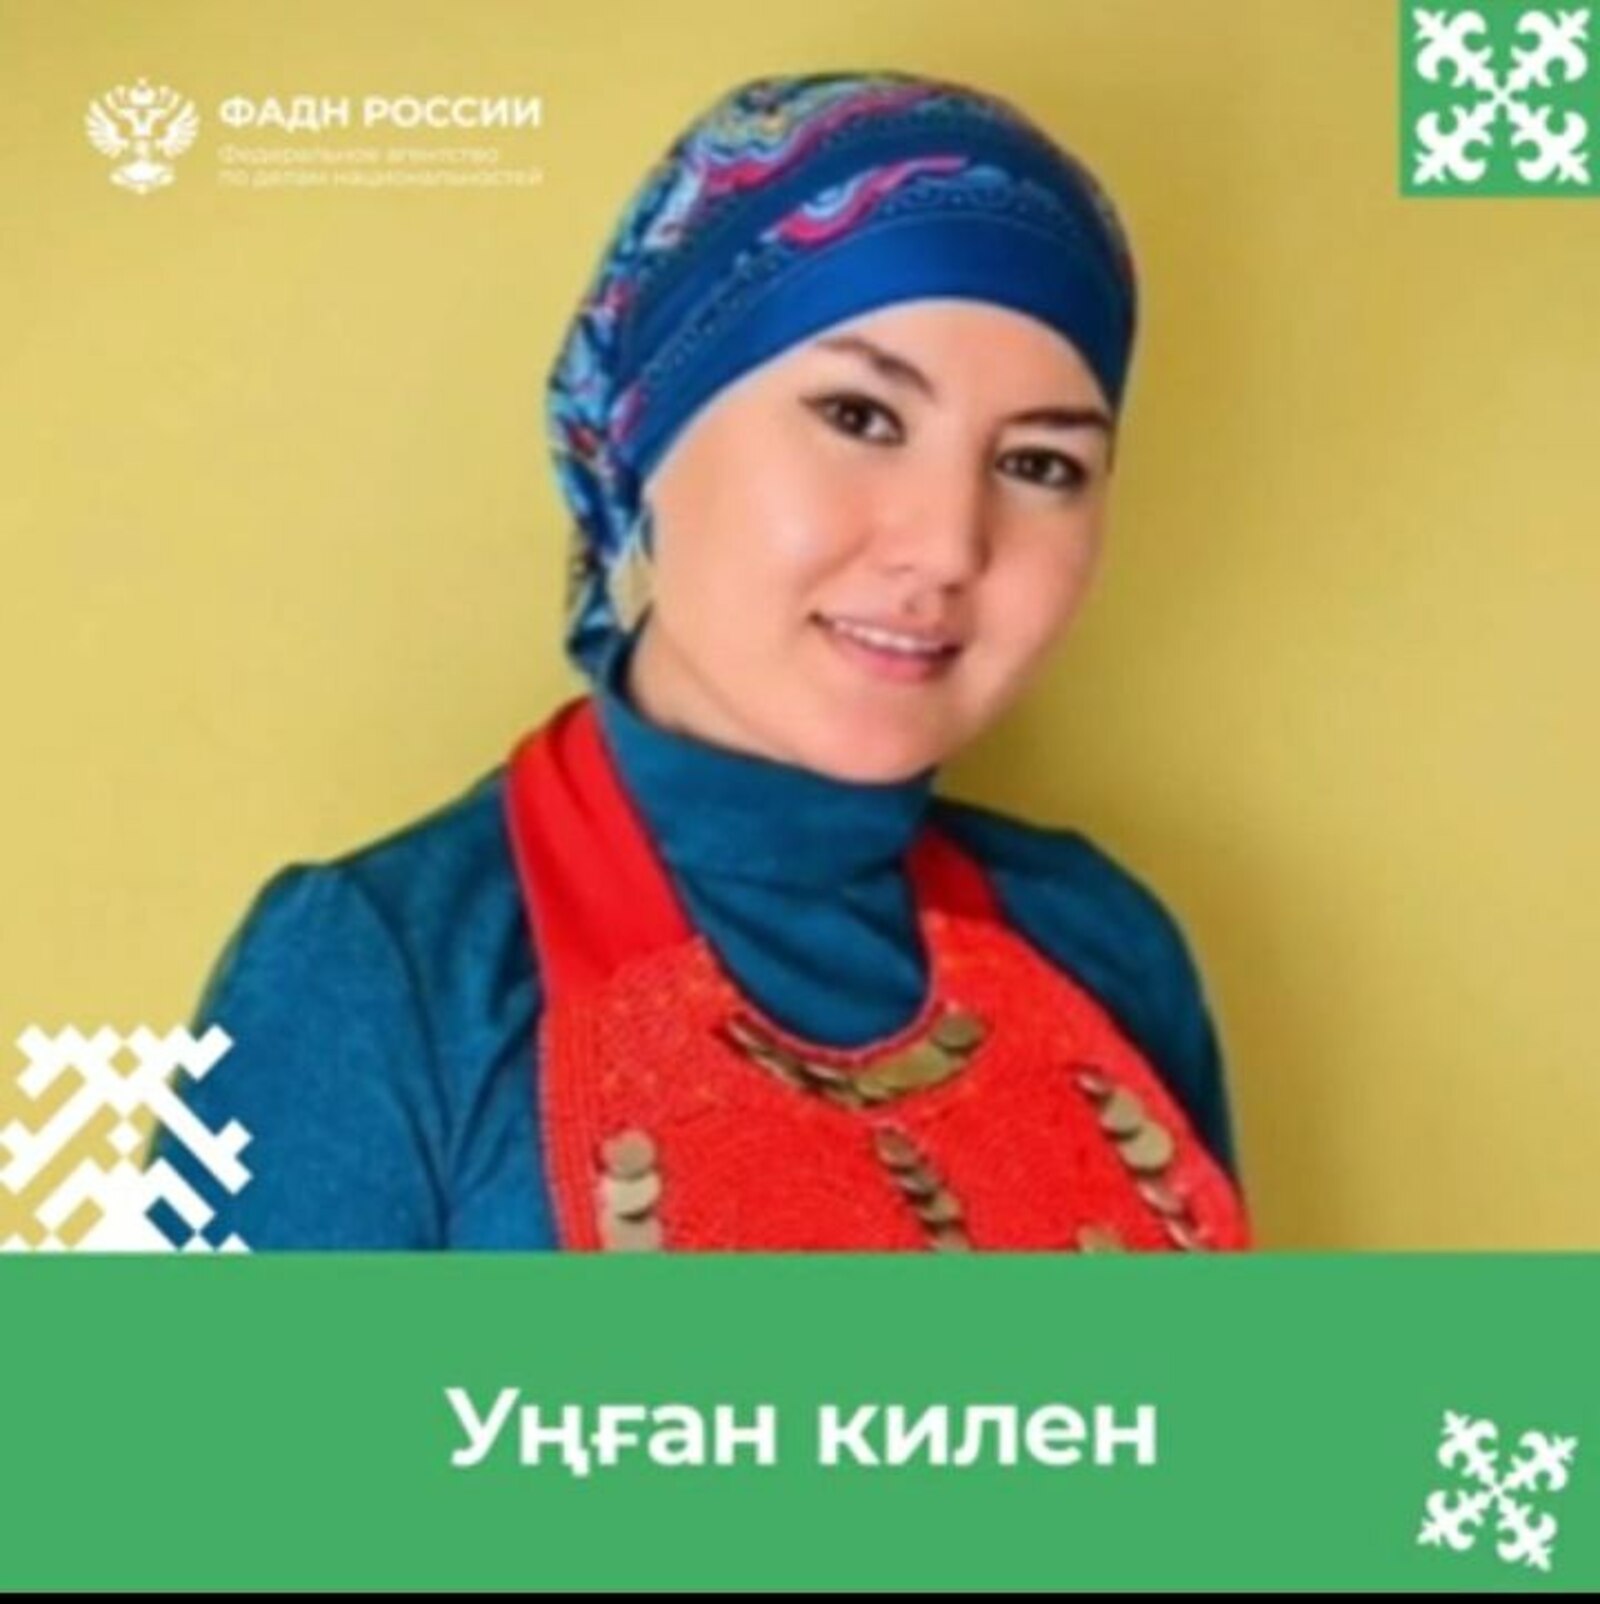 В Башкирии Уңған килен готовит блюда национальной кухни